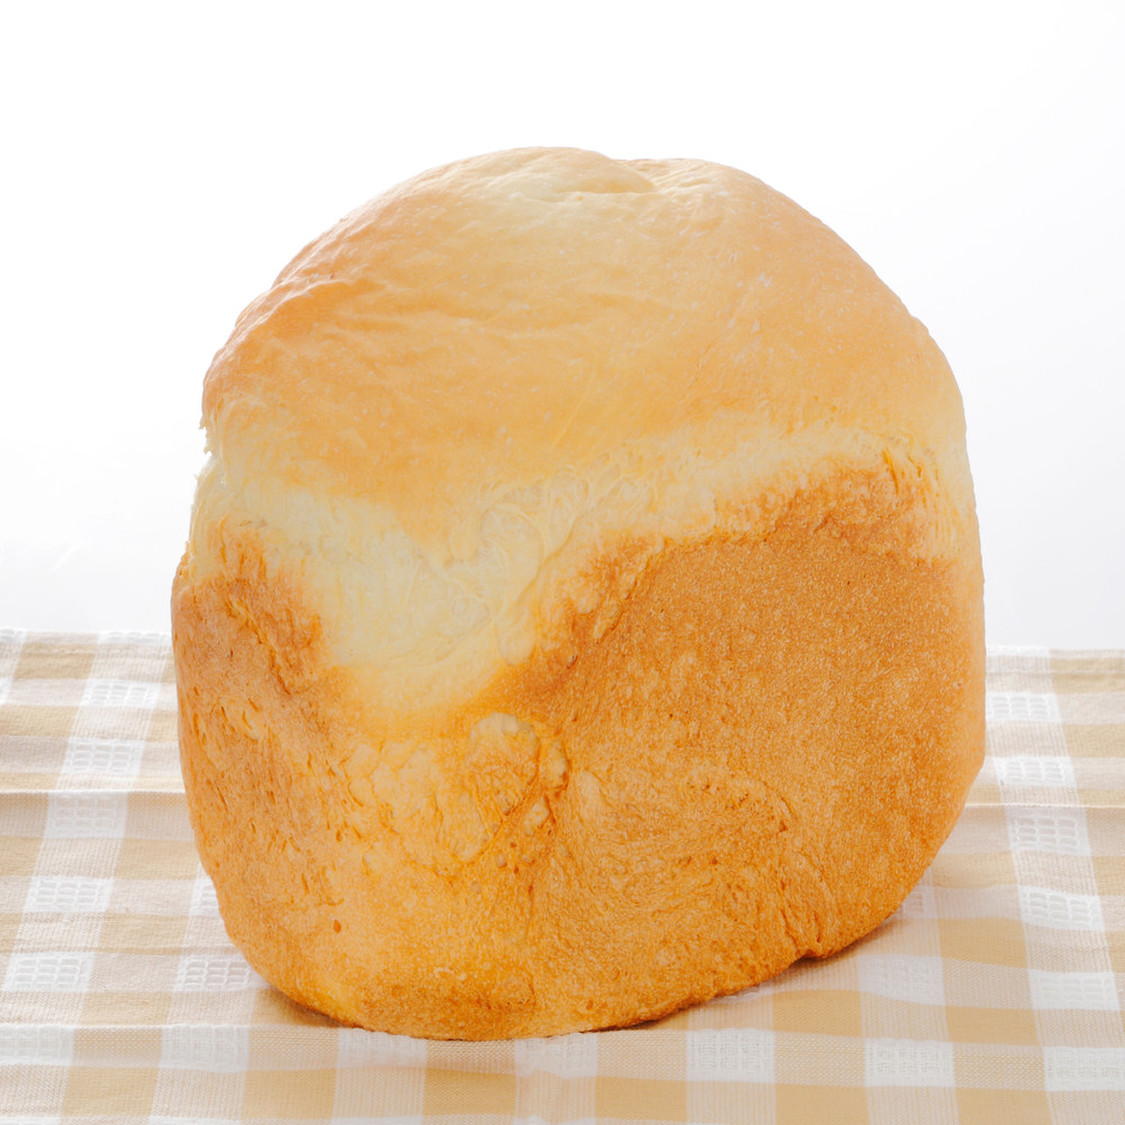 MK 自動ホームベーカリー「ふっくらパン屋さん」米粉パン対応 HBK-100